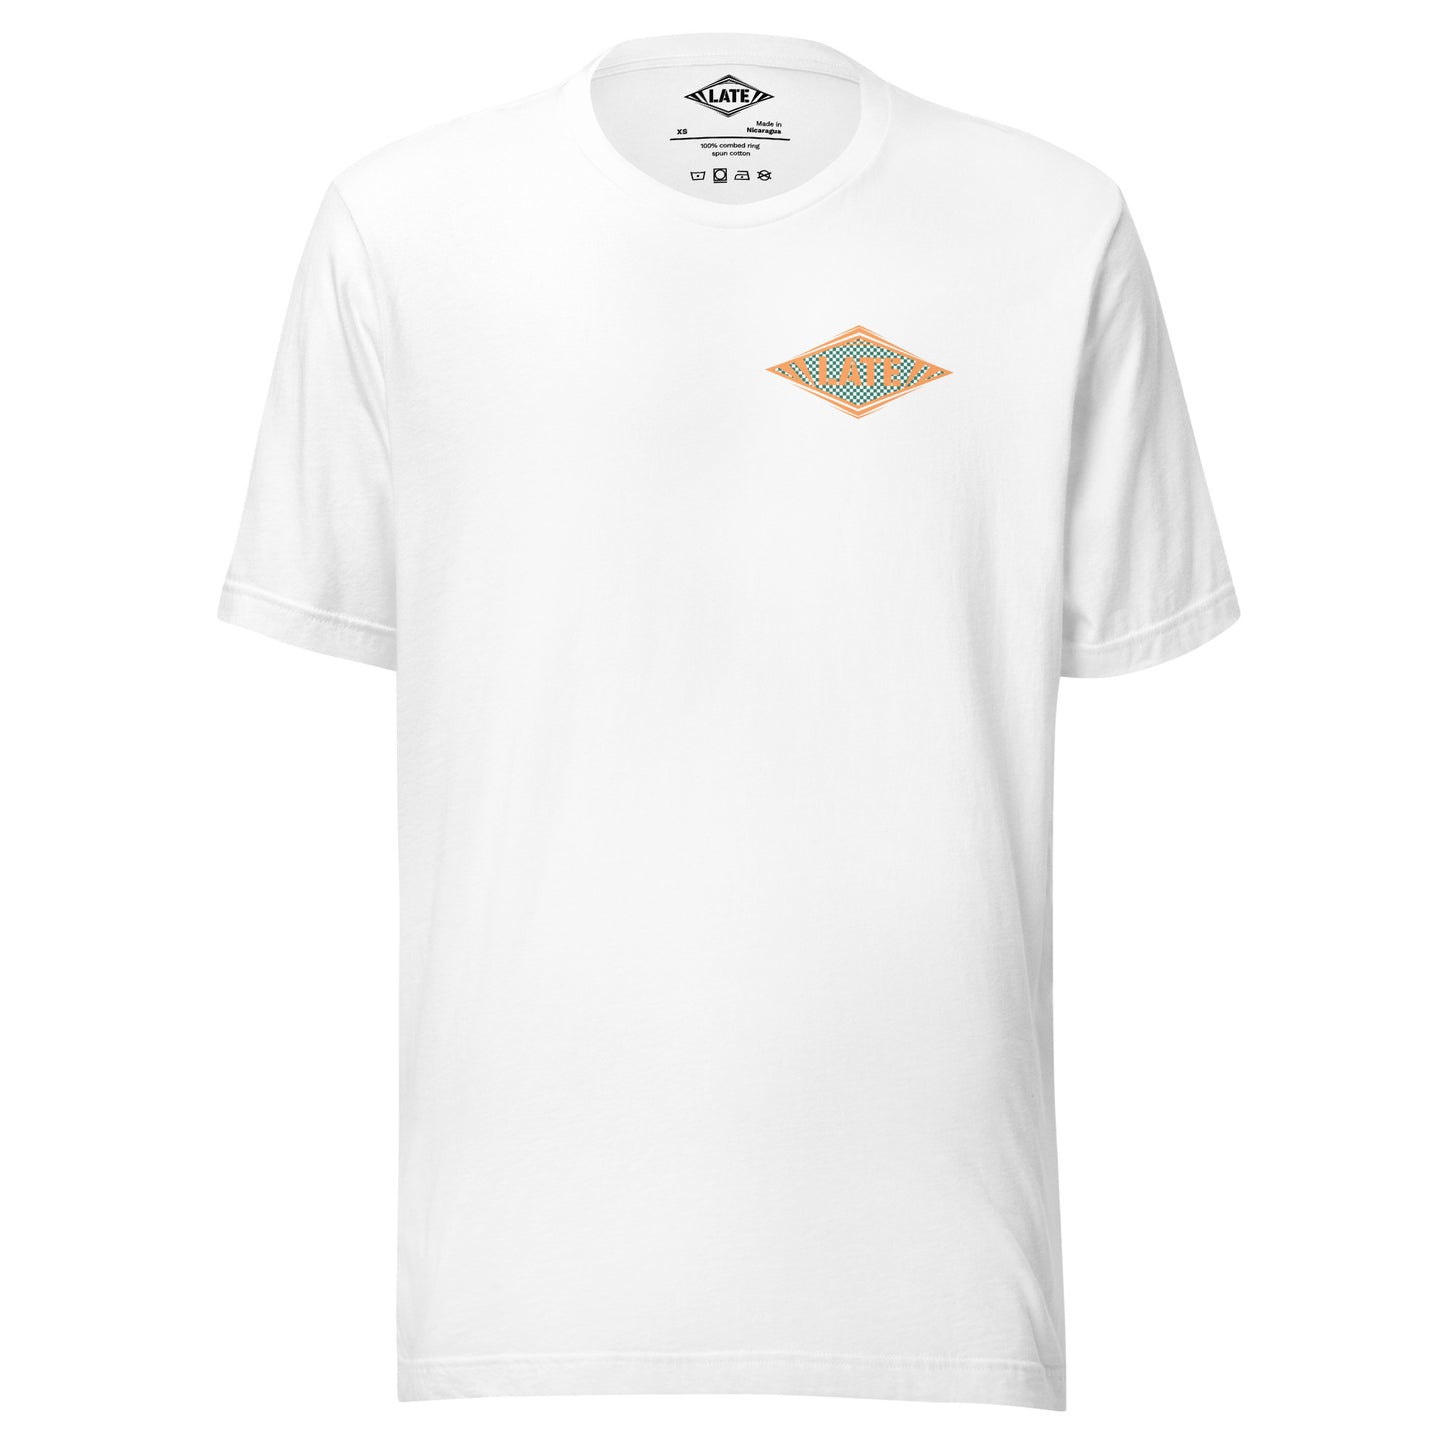 T-Shirt Shred It skateboard style Vans logo Late à carreaux. T-Shirt unisex de face couleur blanc